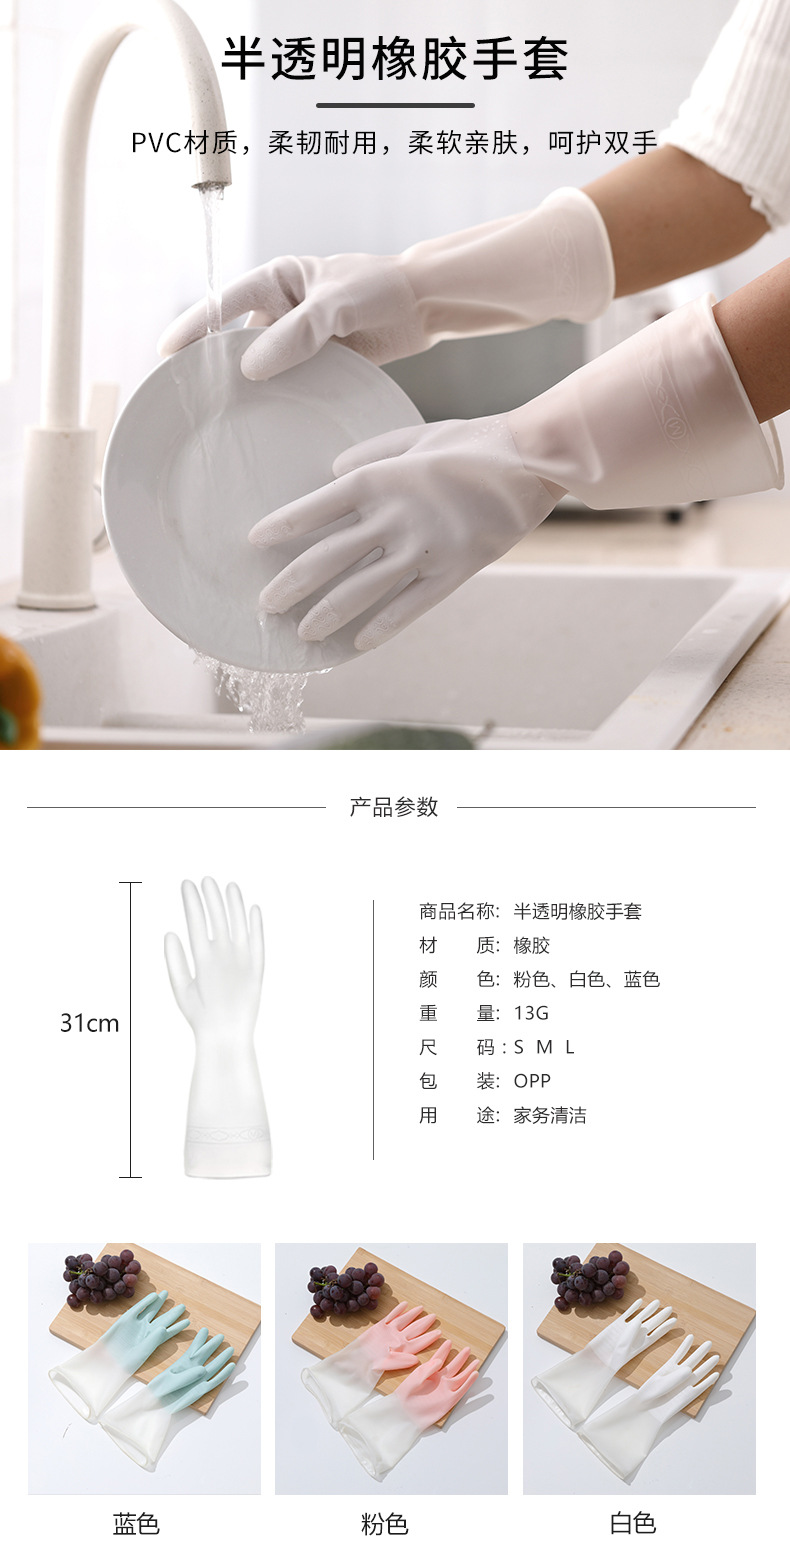 半透明橡膠手套 居家清潔手套 防滑耐用廚房手套 洗衣洗碗手套0